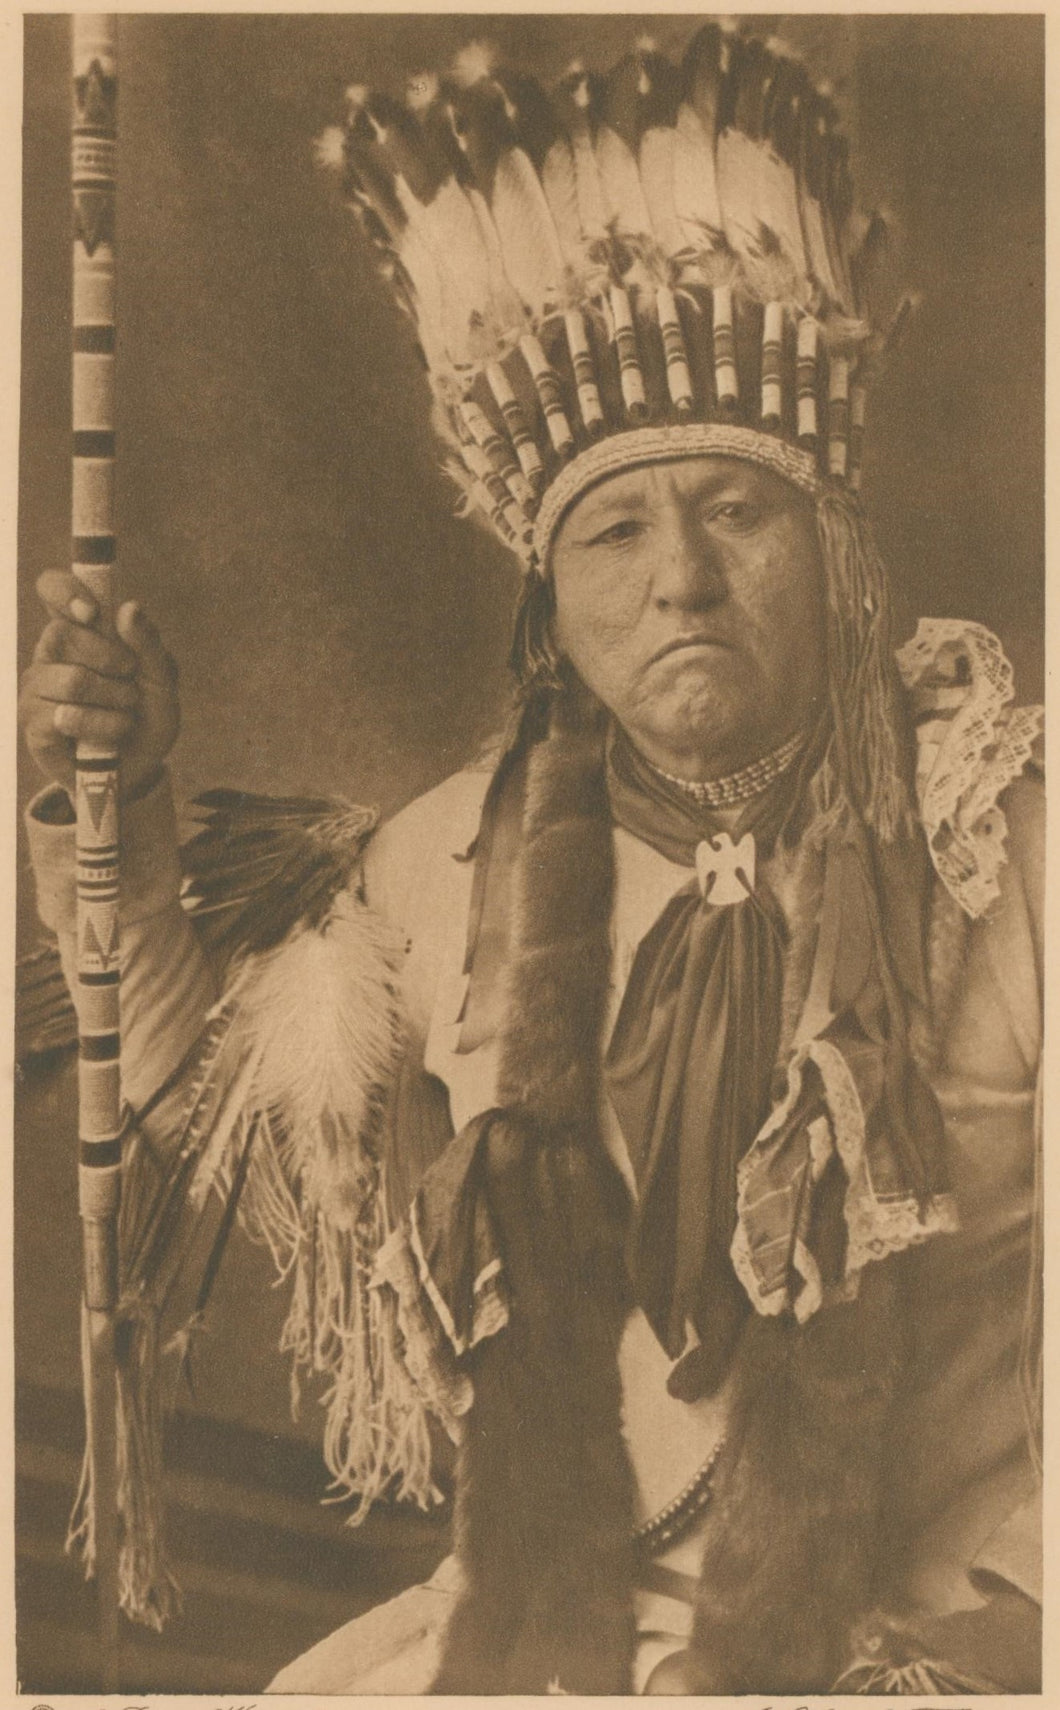 Dixon, Joseph K.  “Chief Timbo” [Comanche]